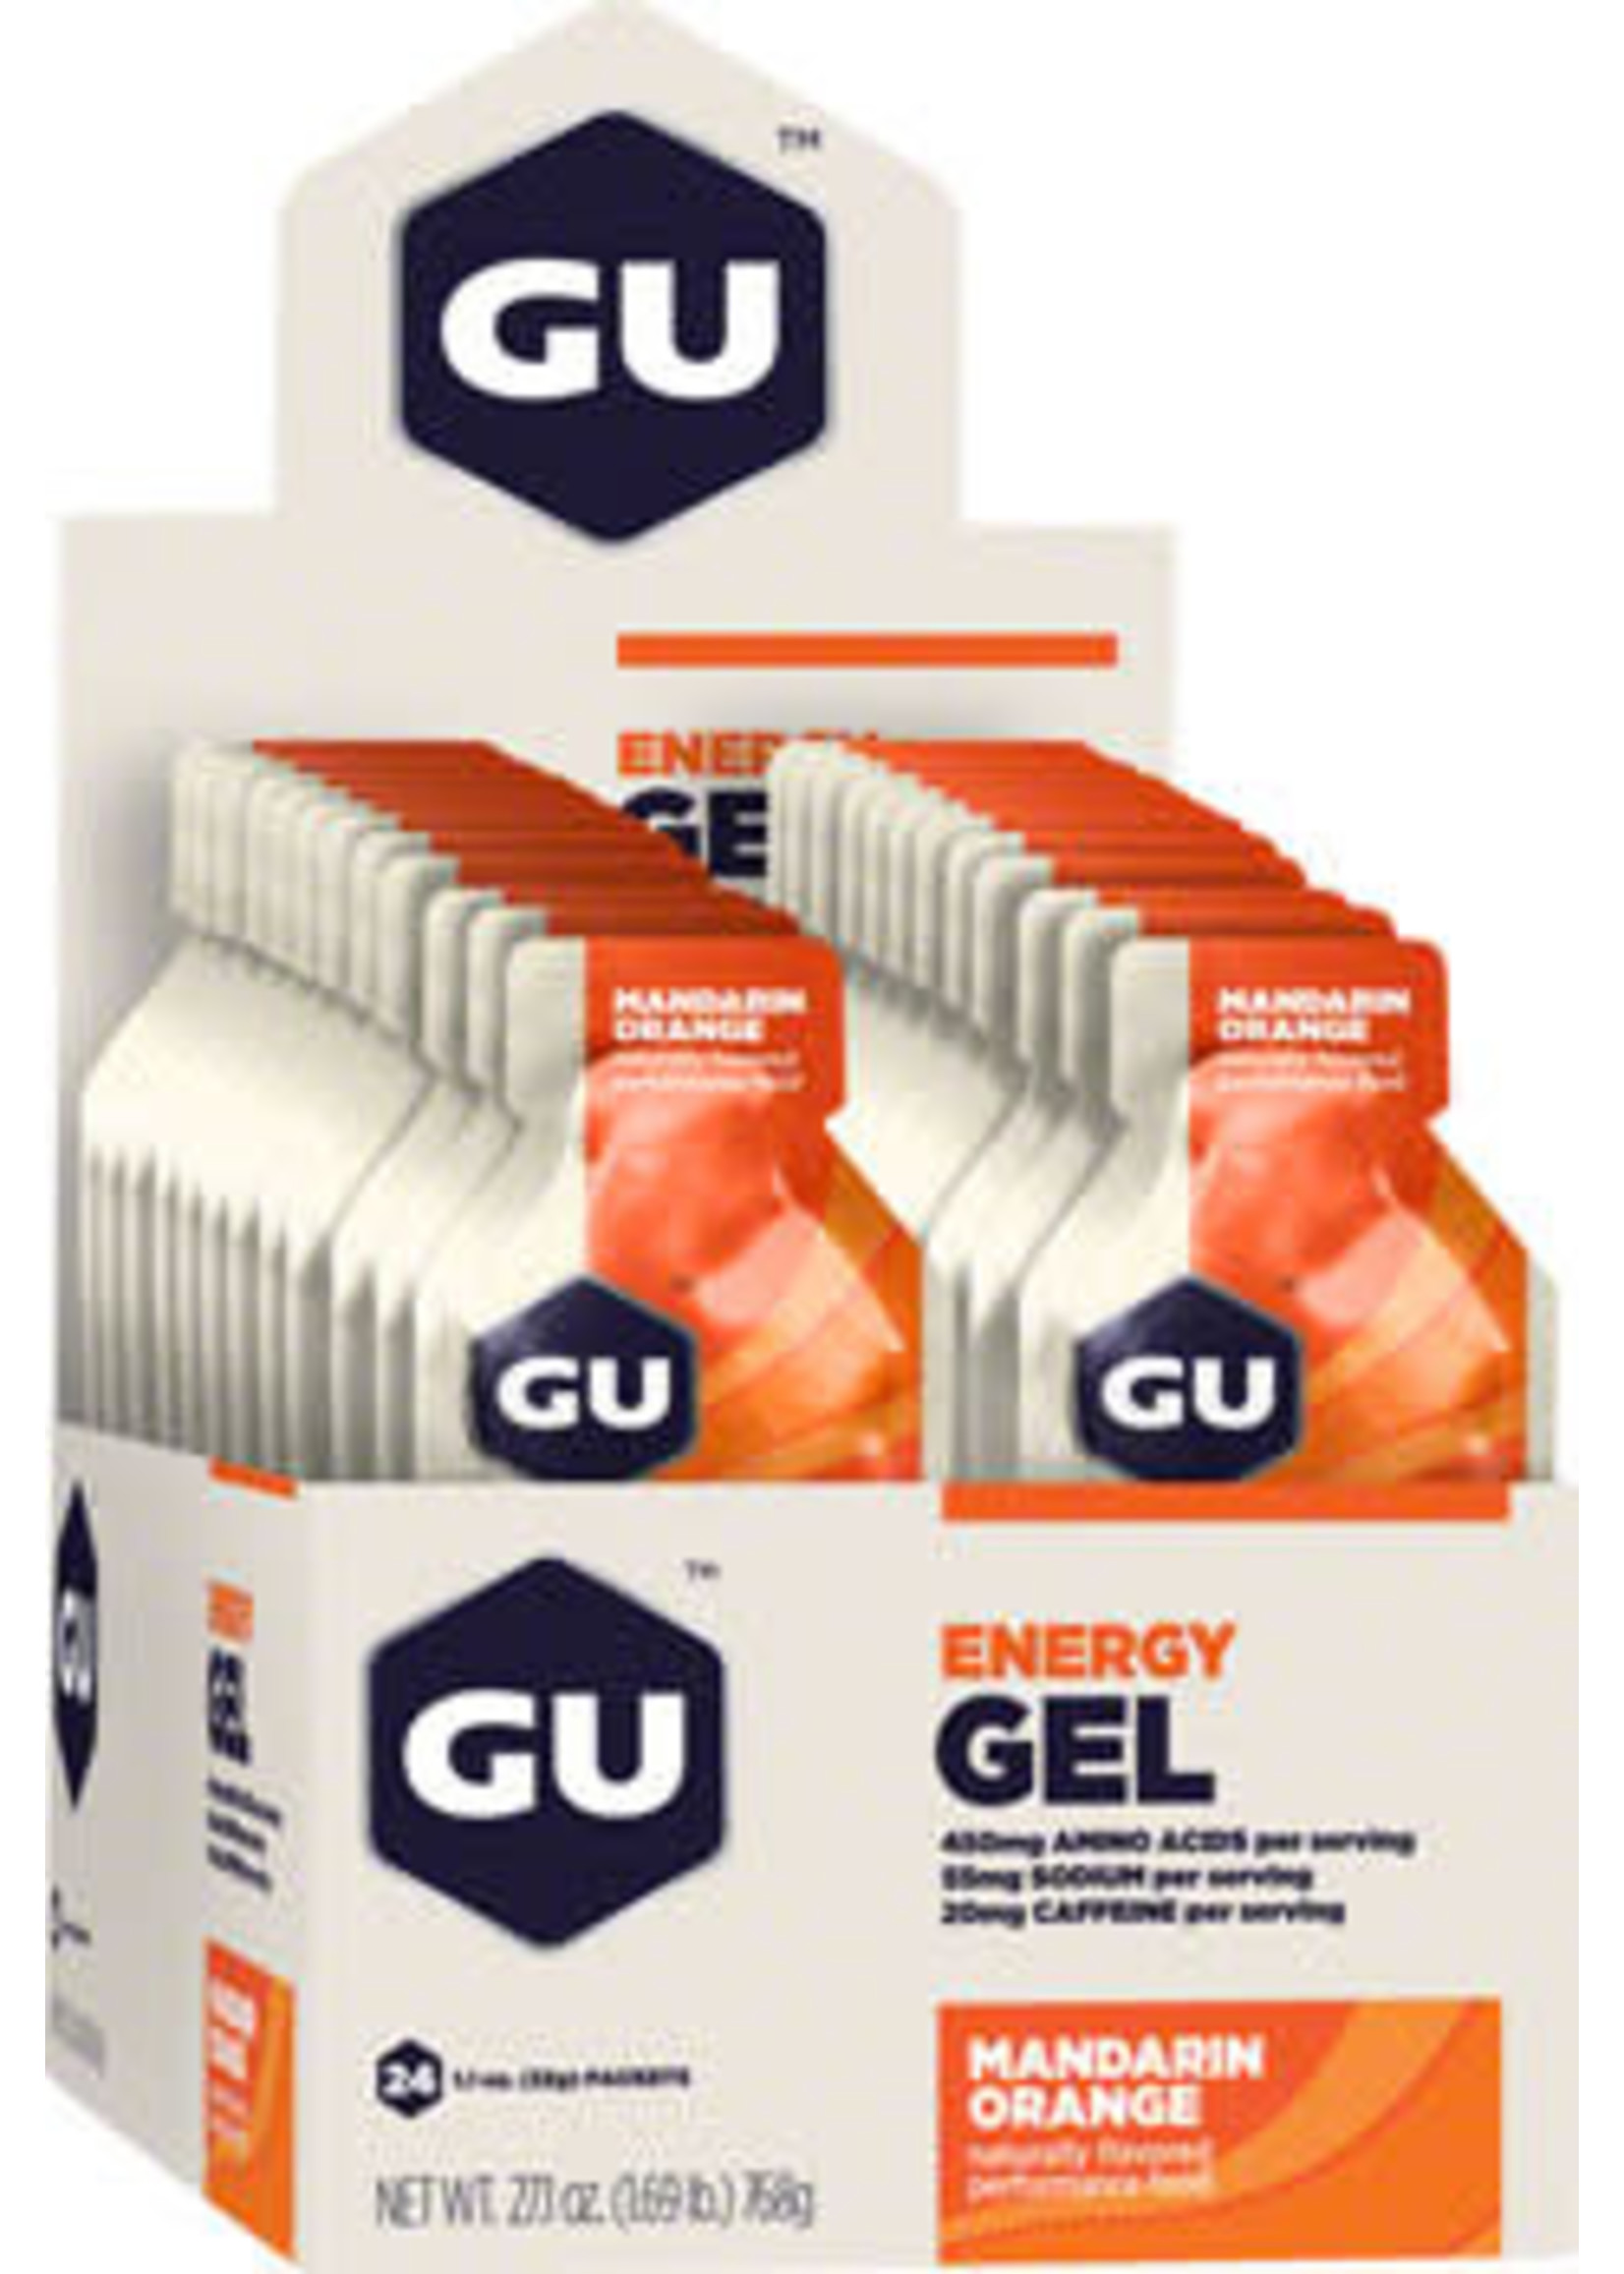 GU GU Energy Gel